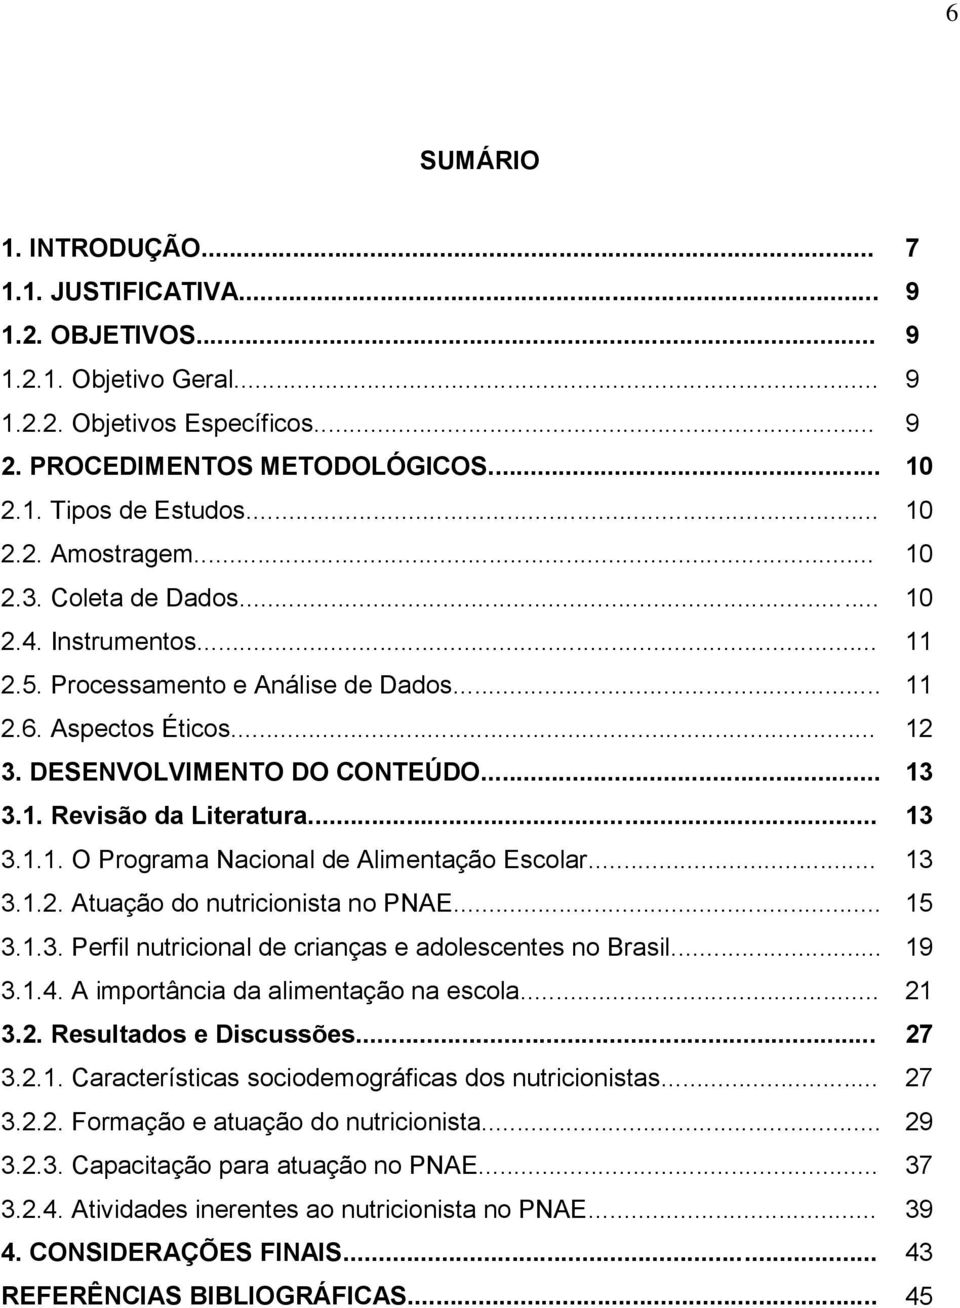 .. 13 3.1.2. Atuação do nutricionista no PNAE... 15 3.1.3. Perfil nutricional de crianças e adolescentes no Brasil... 19 3.1.4. A importância da alimentação na escola... 21 3.2. Resultados e Discussões.